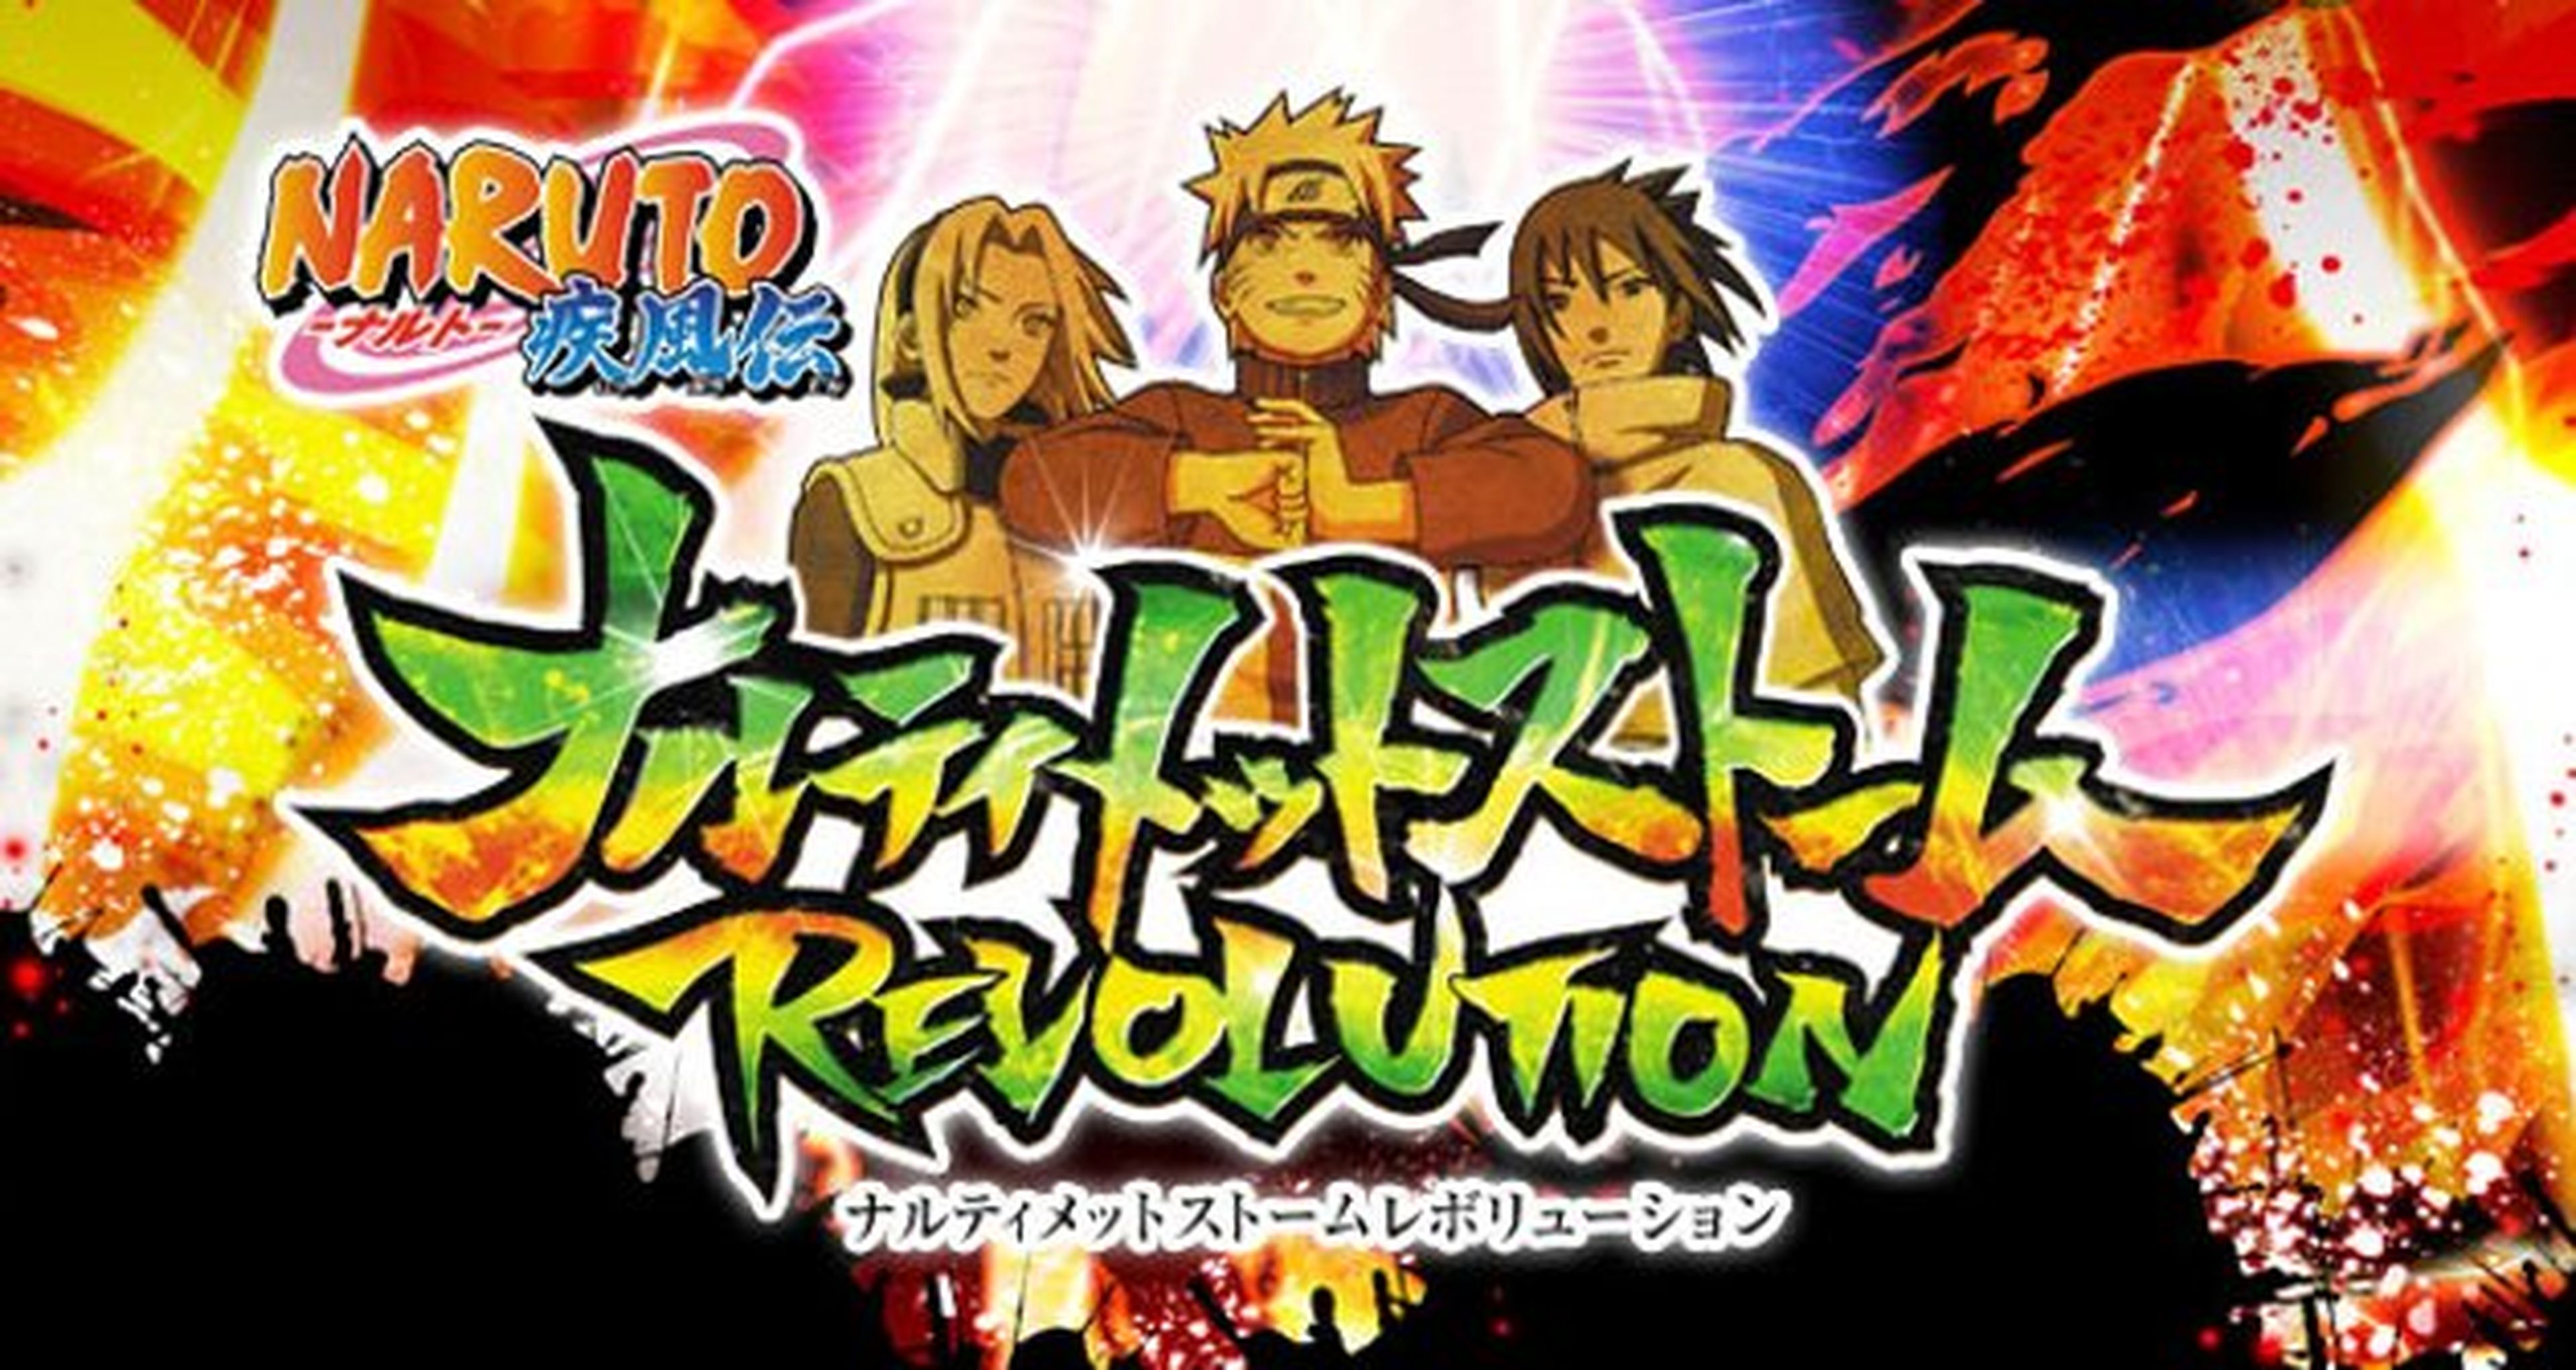 Namco estrena web para Naruto SUNS Revolution